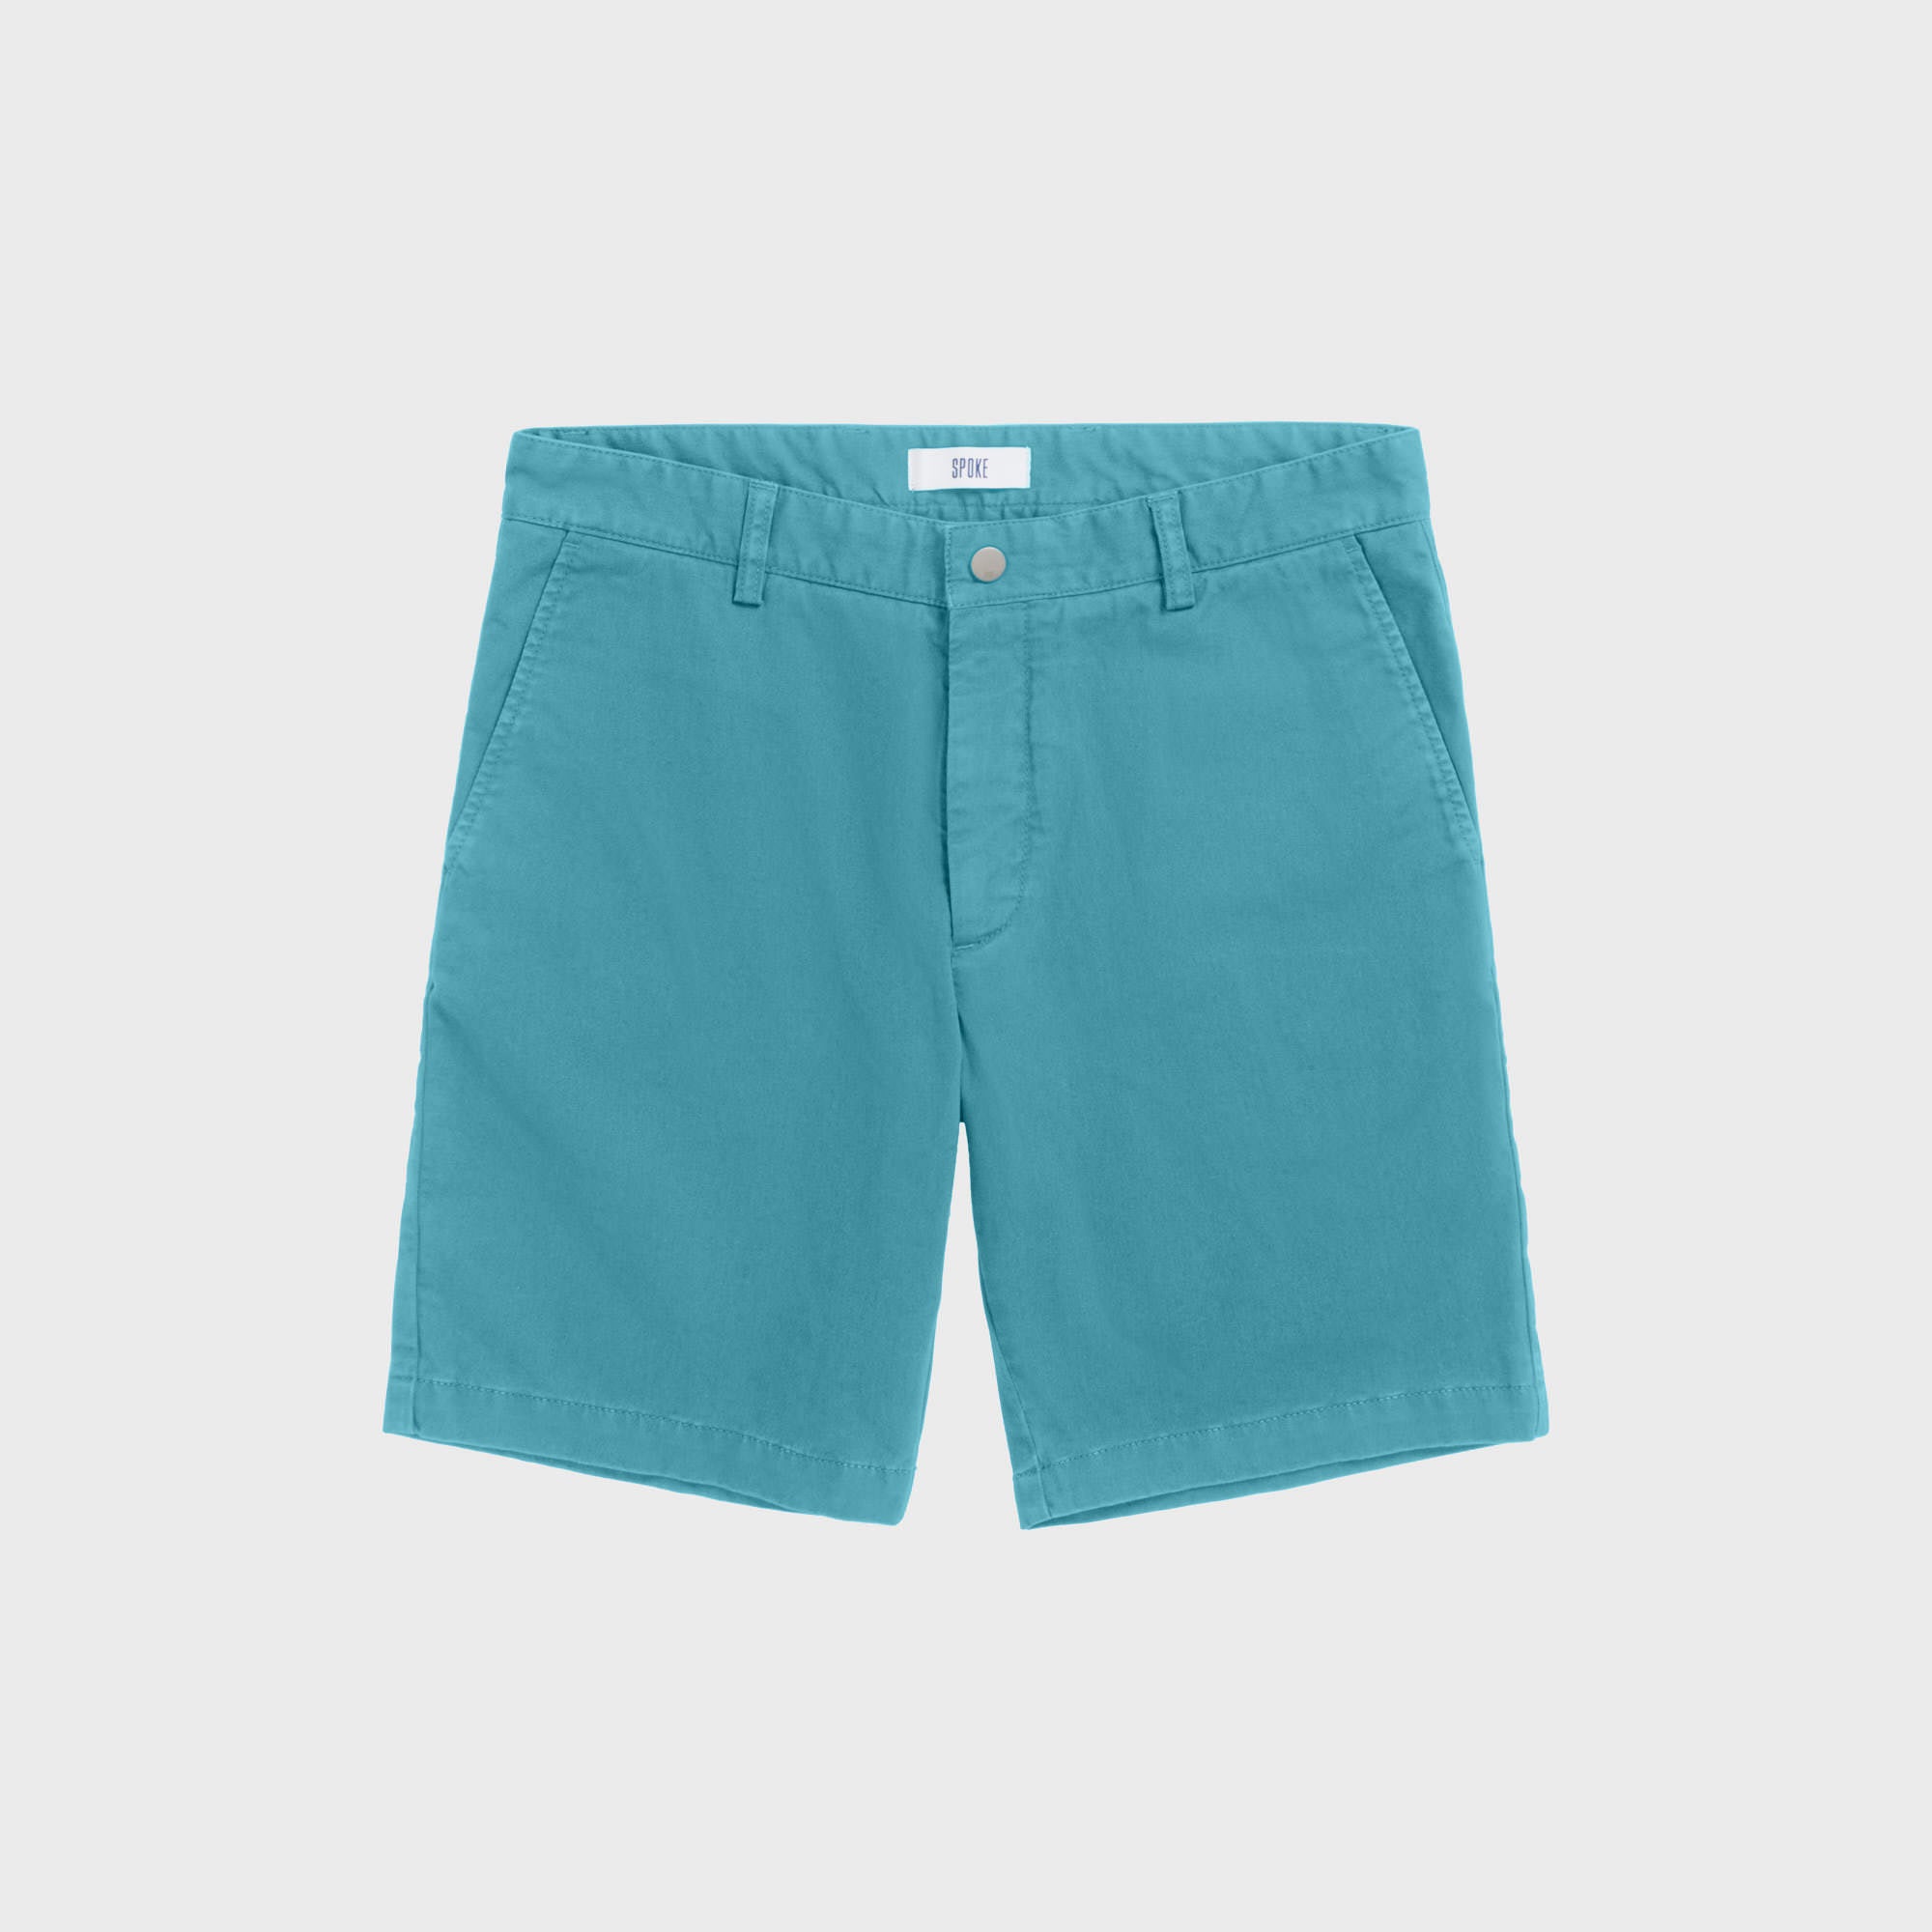 Lagoon Blue Shorts - Men's Tailored Shorts - SPOKE - SPOKE